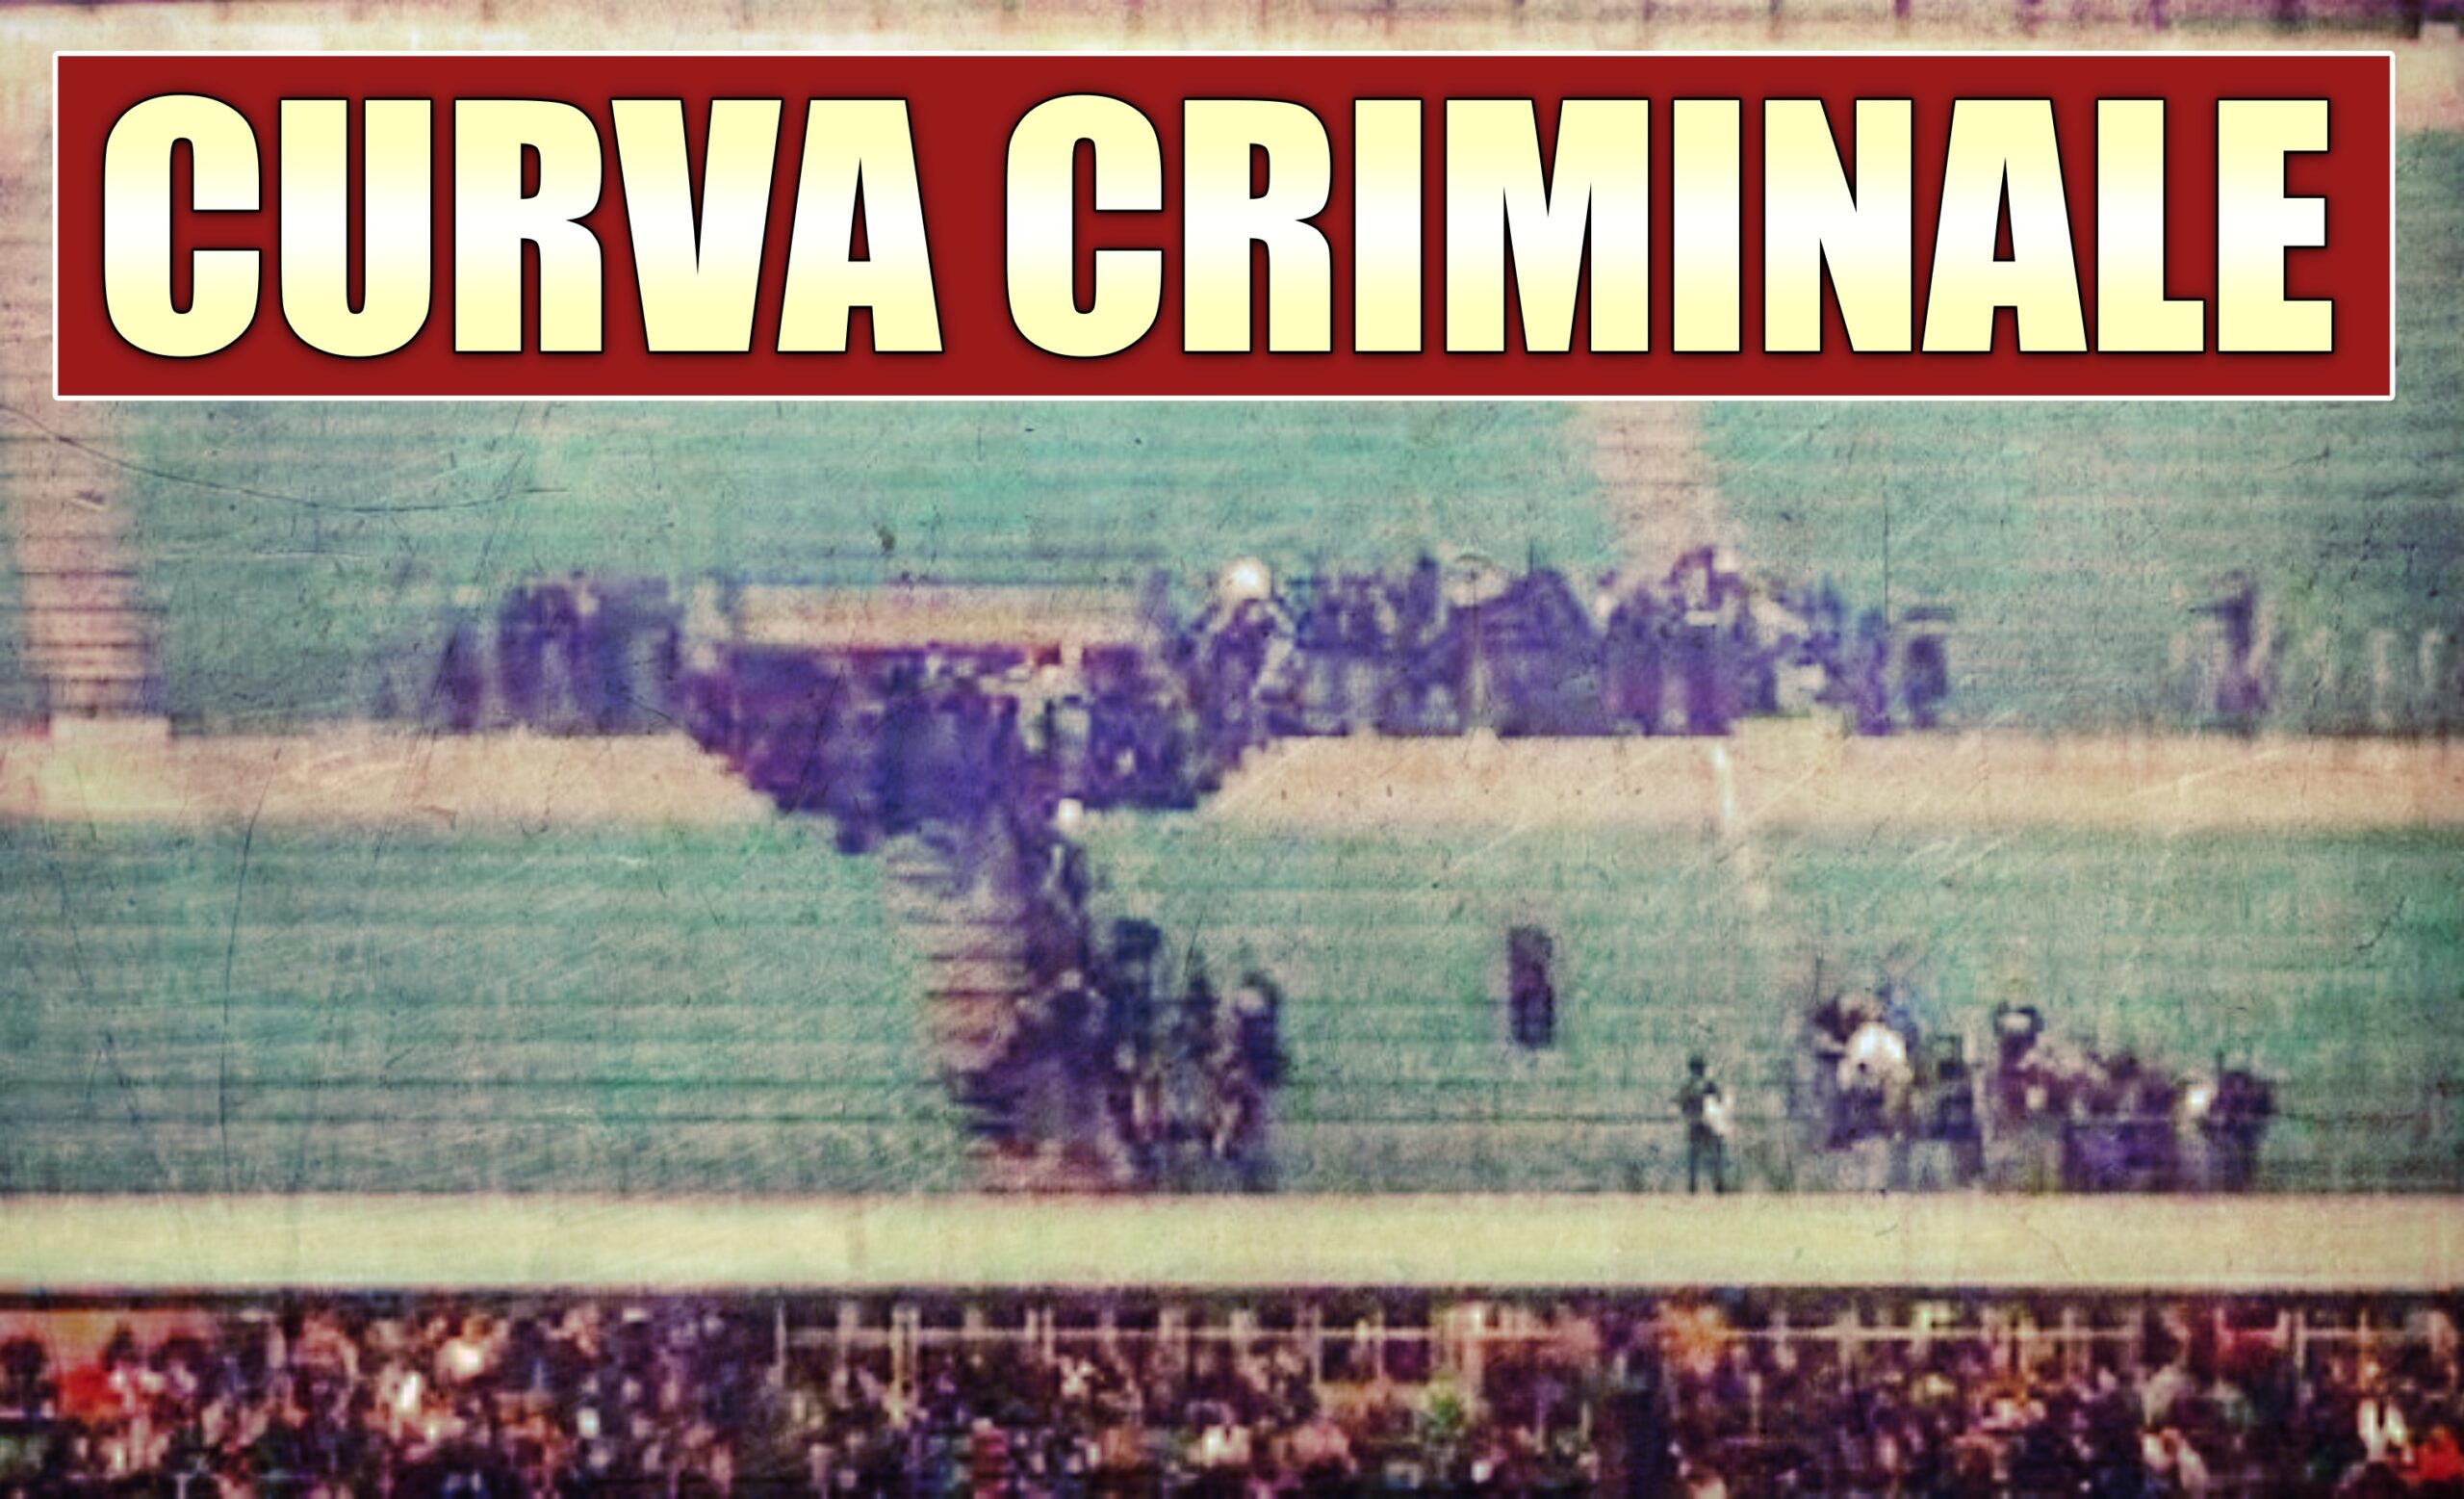 Curva dell'Inter, svuotata a forza dagli ultras nerazzurri